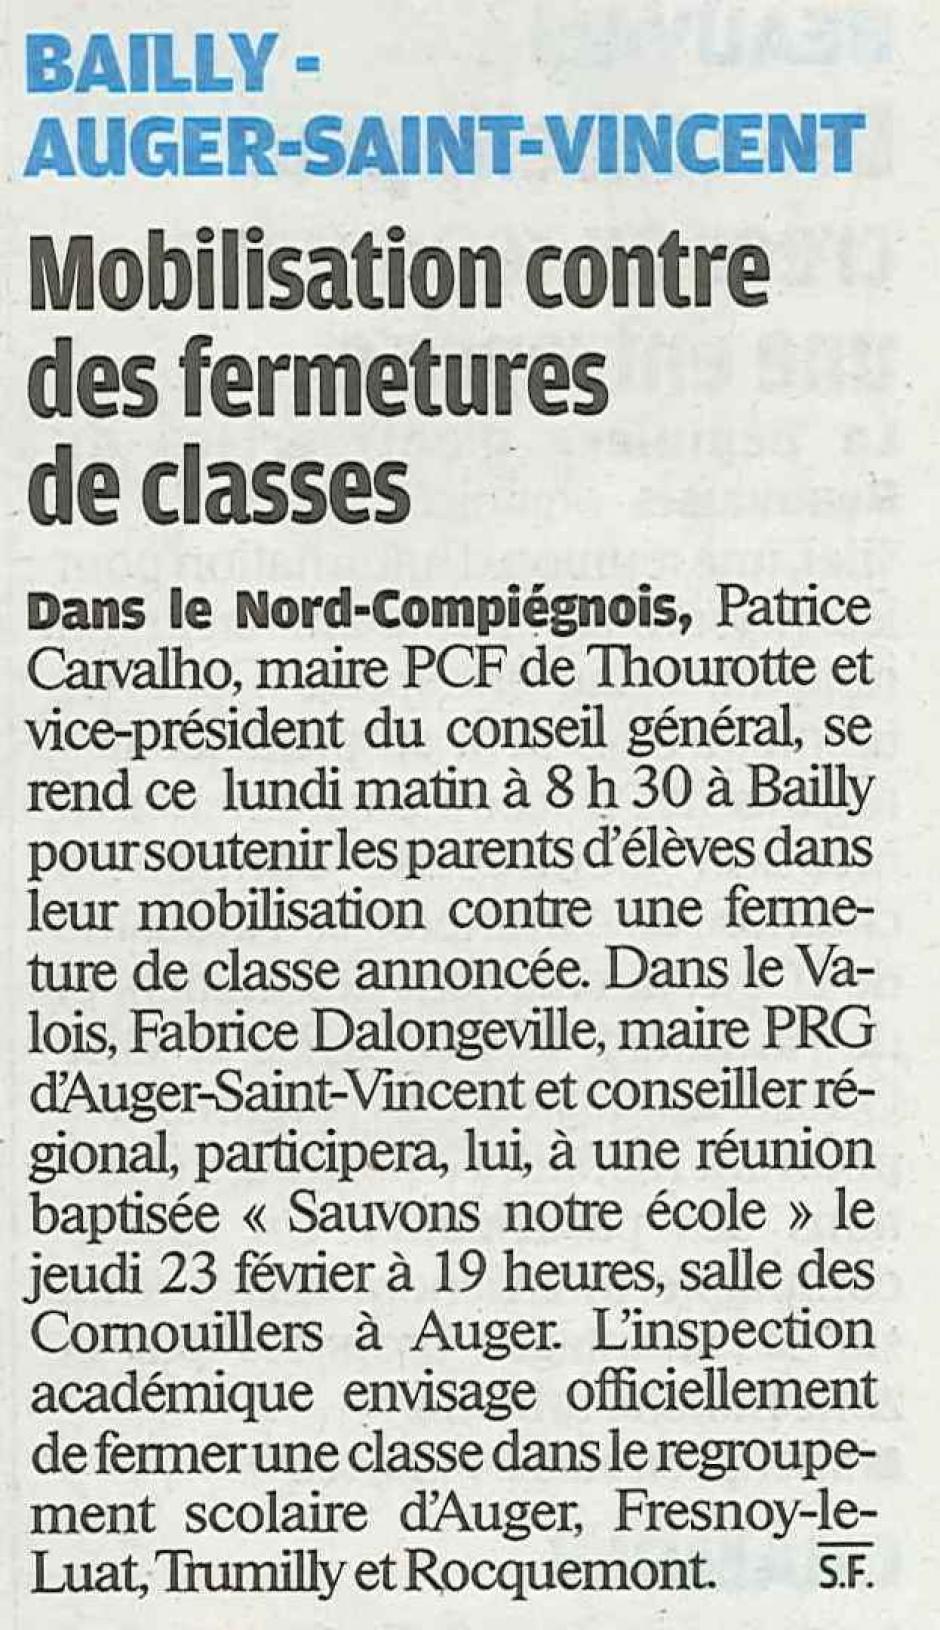 20120206-LeP-Bailly-Auger-Saint-Vincent-Mobilisation contre des fermetures de classes